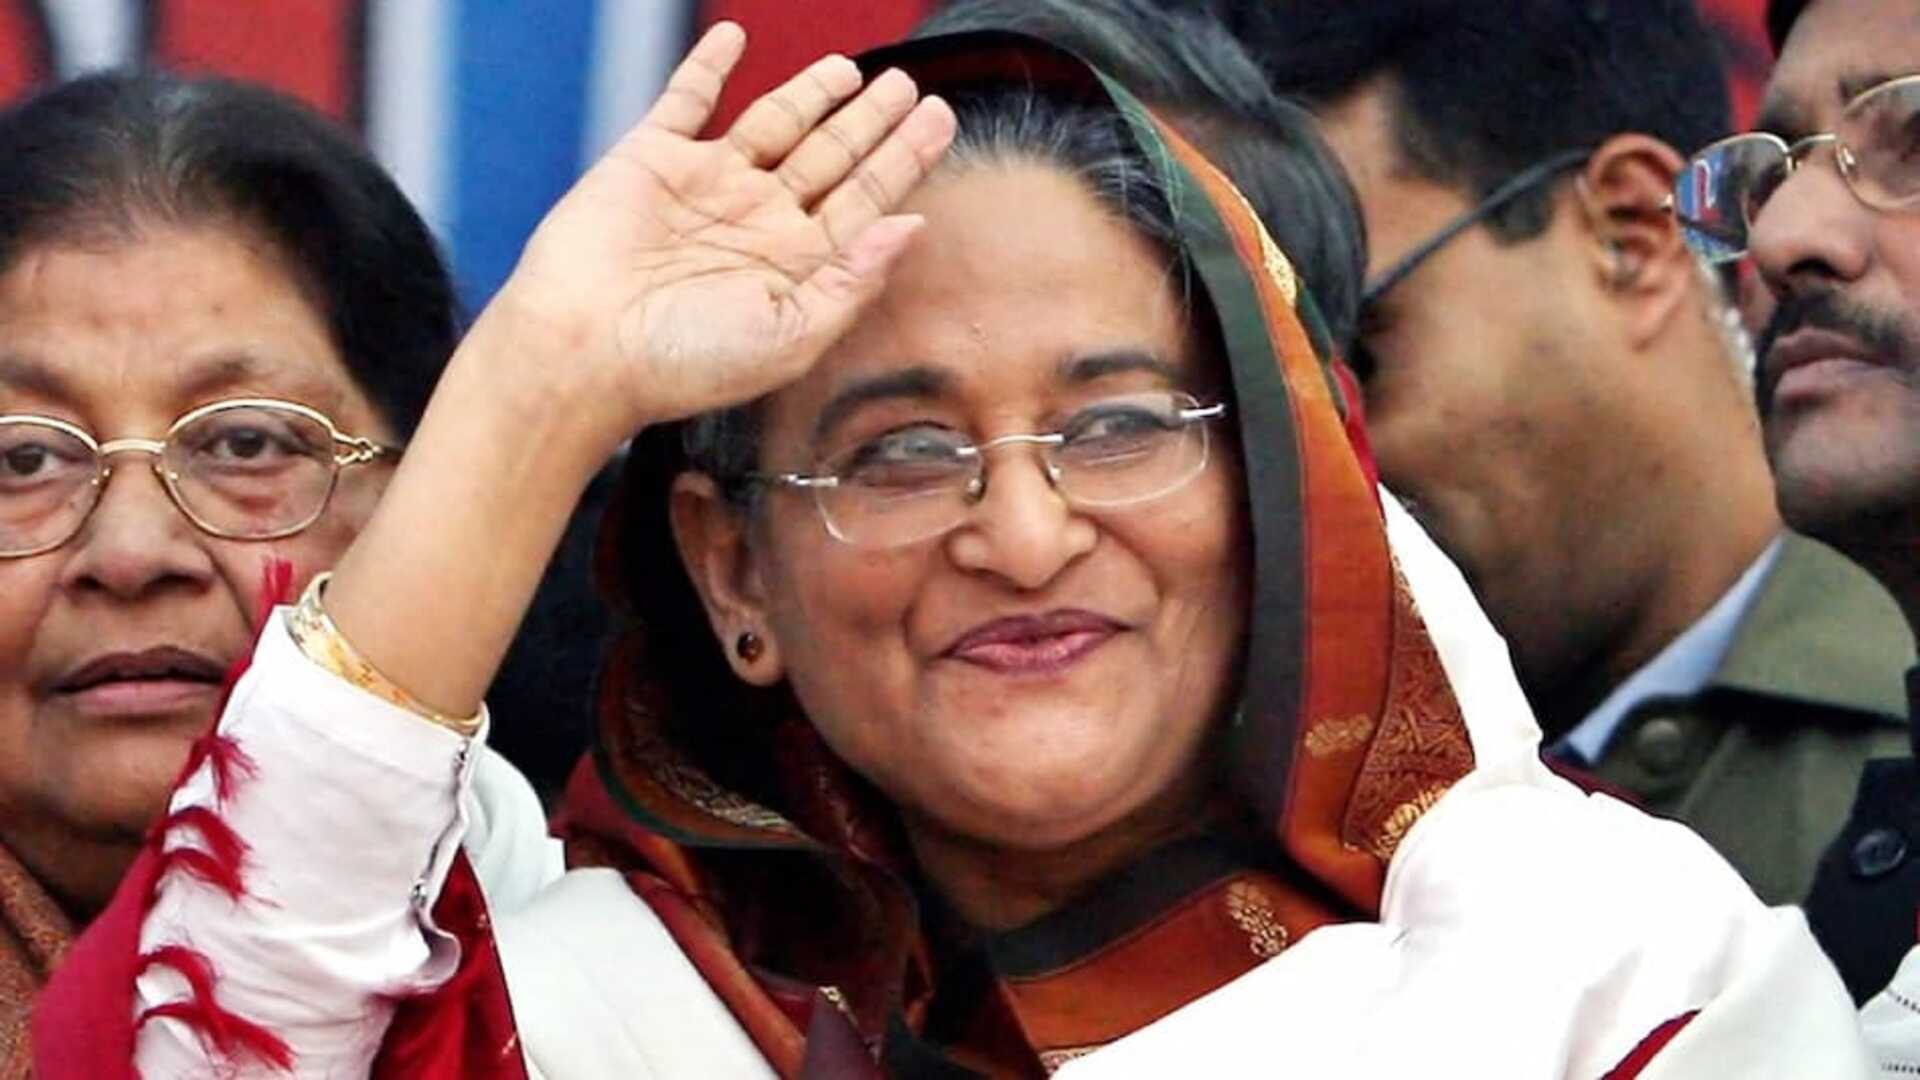 Bangladesh के आम चुनाव में शेख हसीना की जीत, पांचवीं बार बनेंगी पीएम, विपक्ष ने किया था चुनाव का बहिष्कार